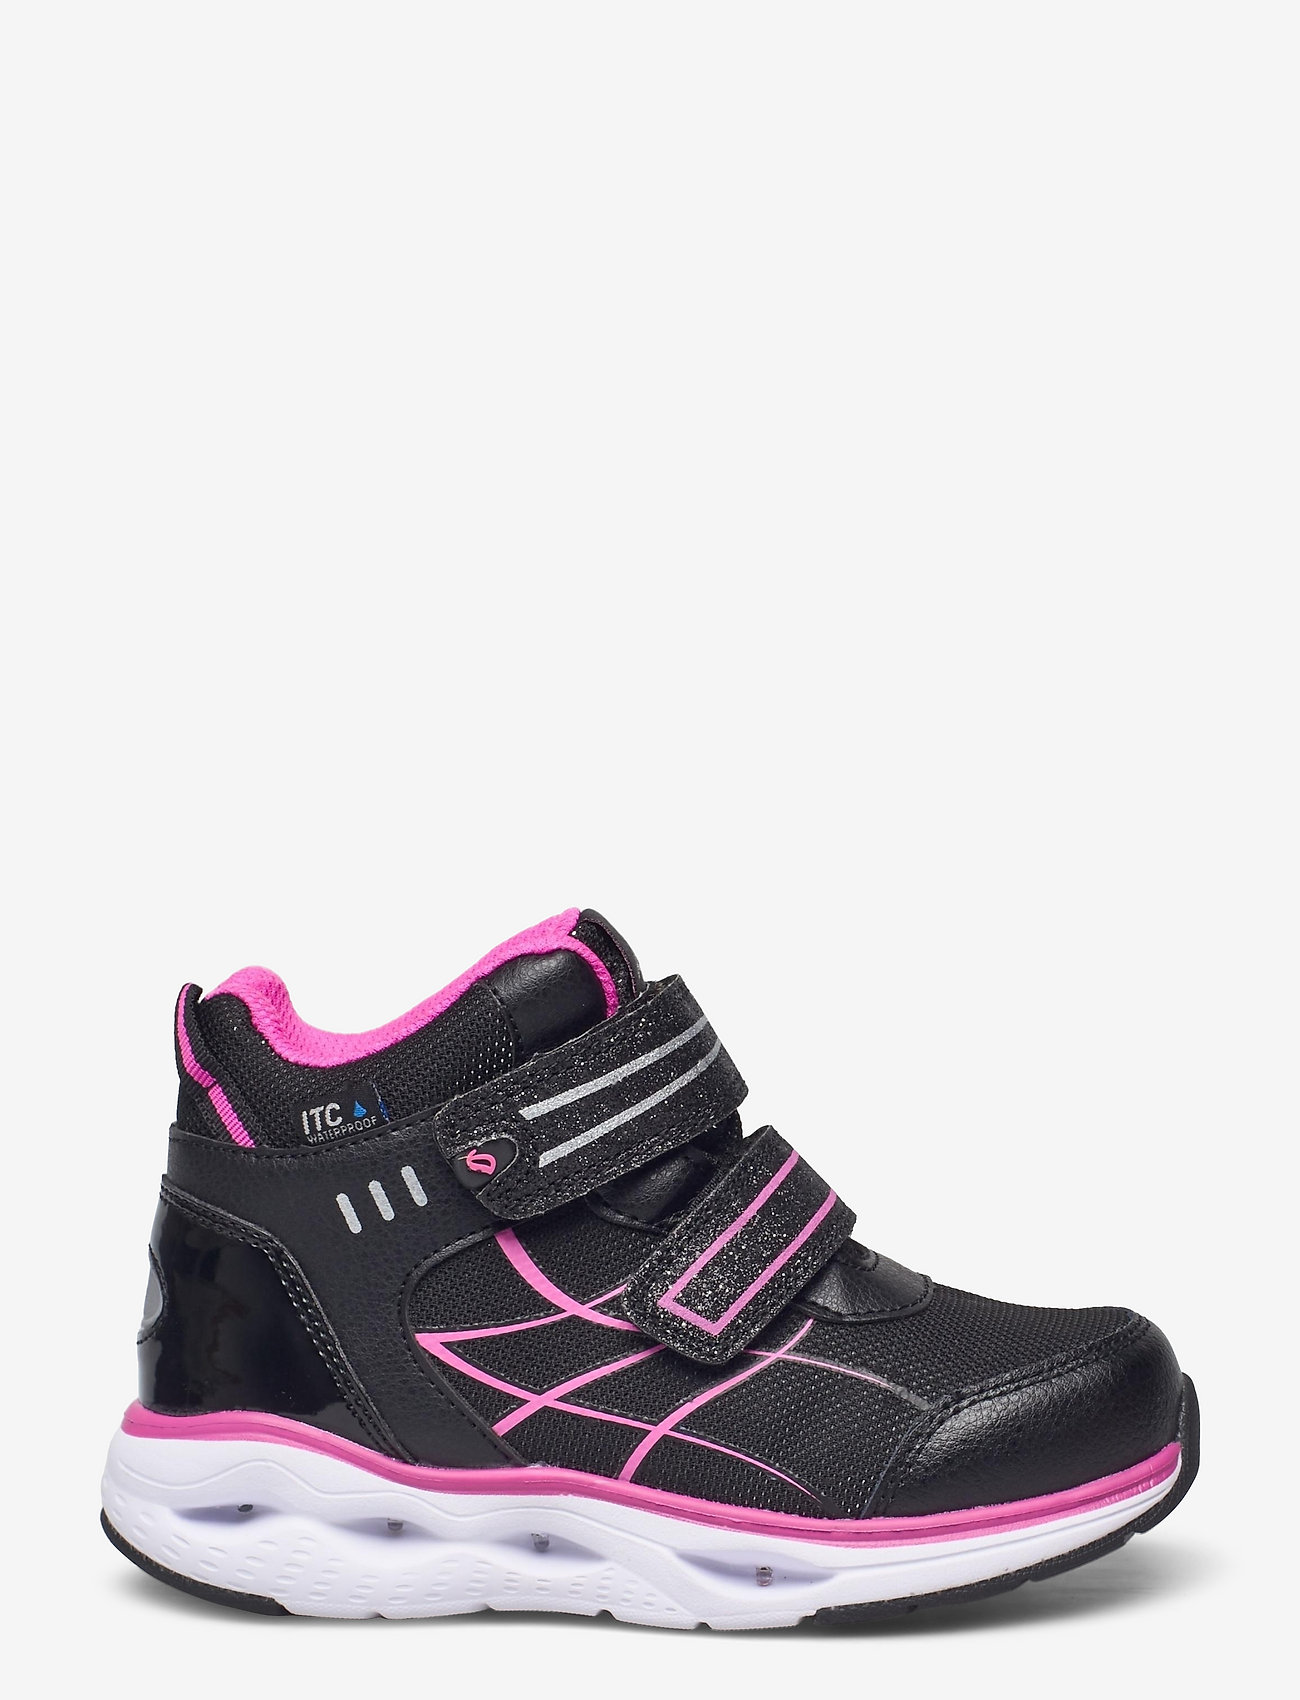 Leaf - Ajos - waterproof sneakers - black/pink - 1